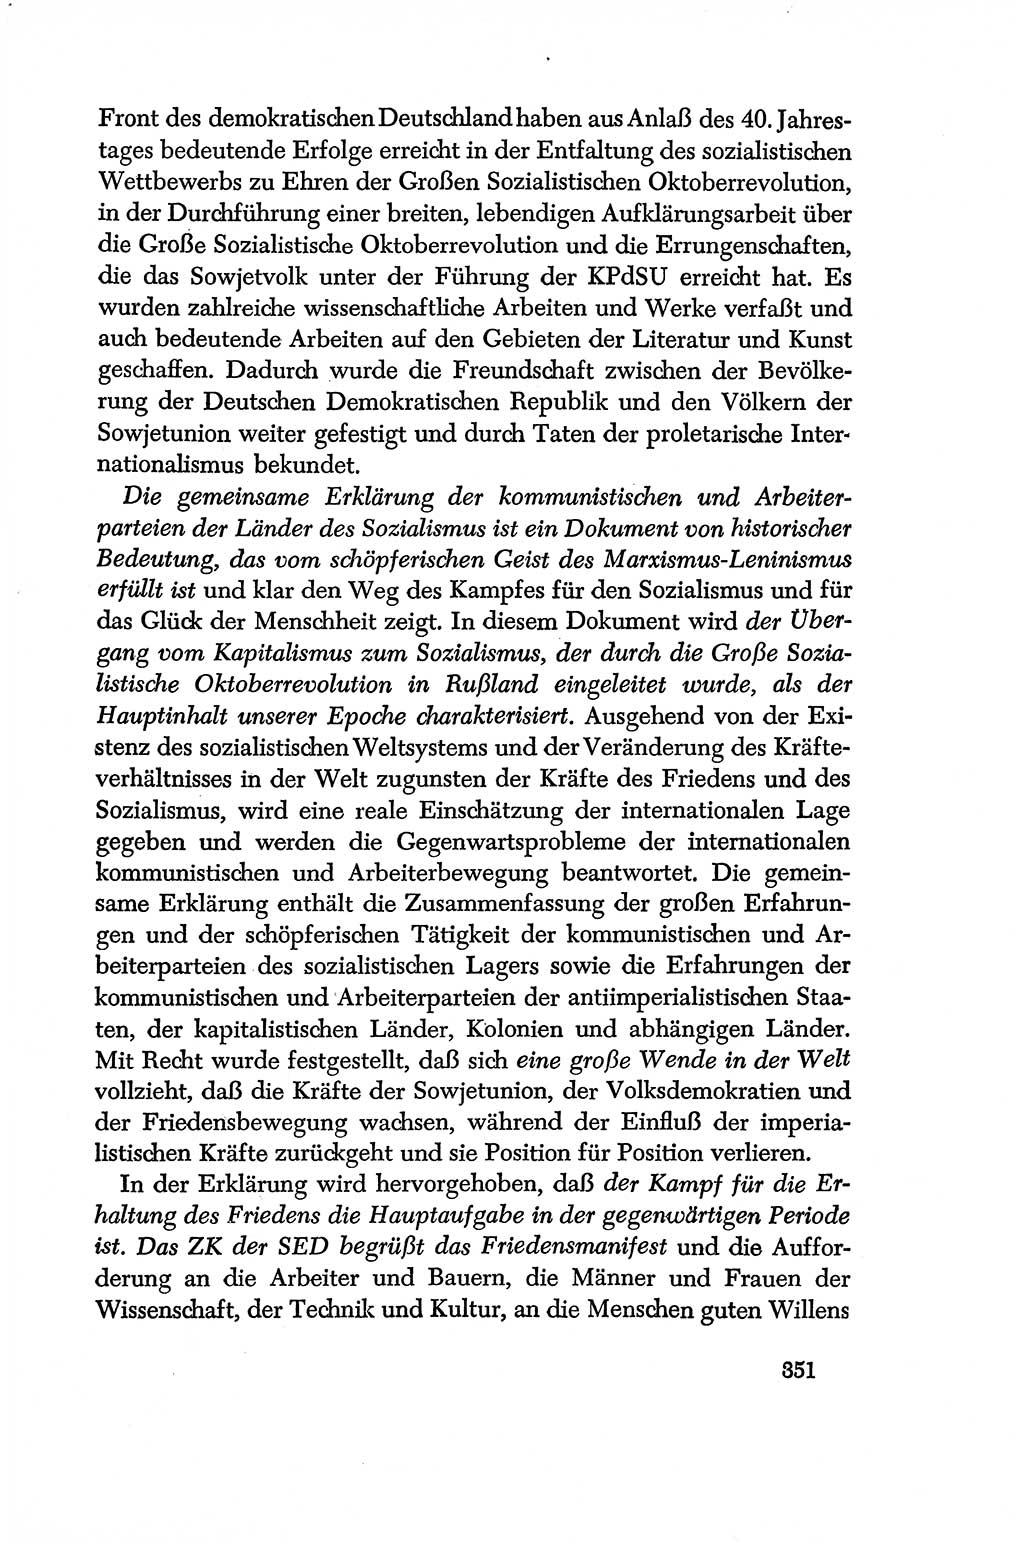 Dokumente der Sozialistischen Einheitspartei Deutschlands (SED) [Deutsche Demokratische Republik (DDR)] 1956-1957, Seite 351 (Dok. SED DDR 1956-1957, S. 351)